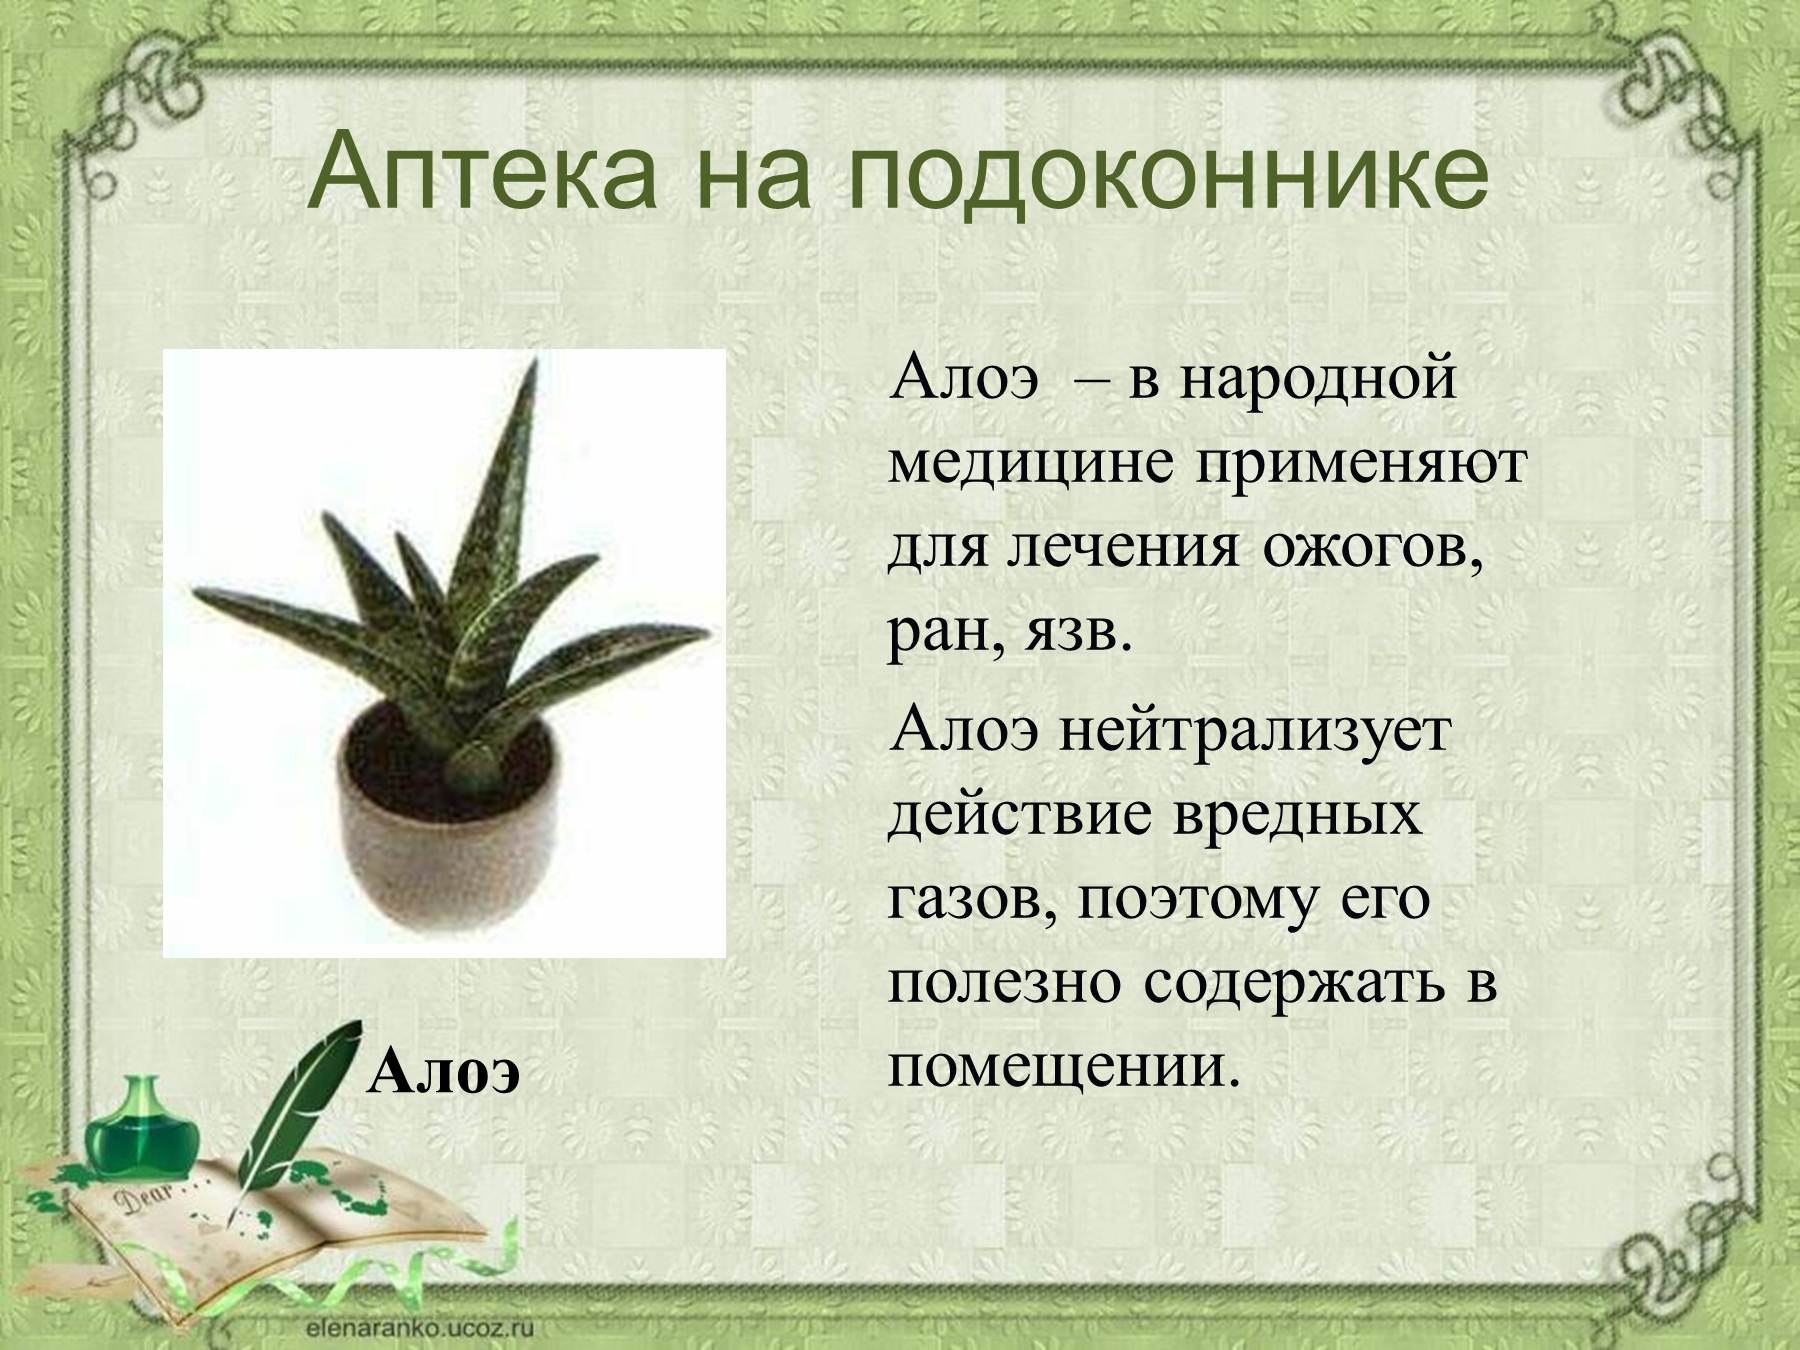 Описать алоэ. Алоэ комнатное растение. Алоэ комнатное растение описание. Сообщение о комнатном растении. Рассказ о комнатном растении.